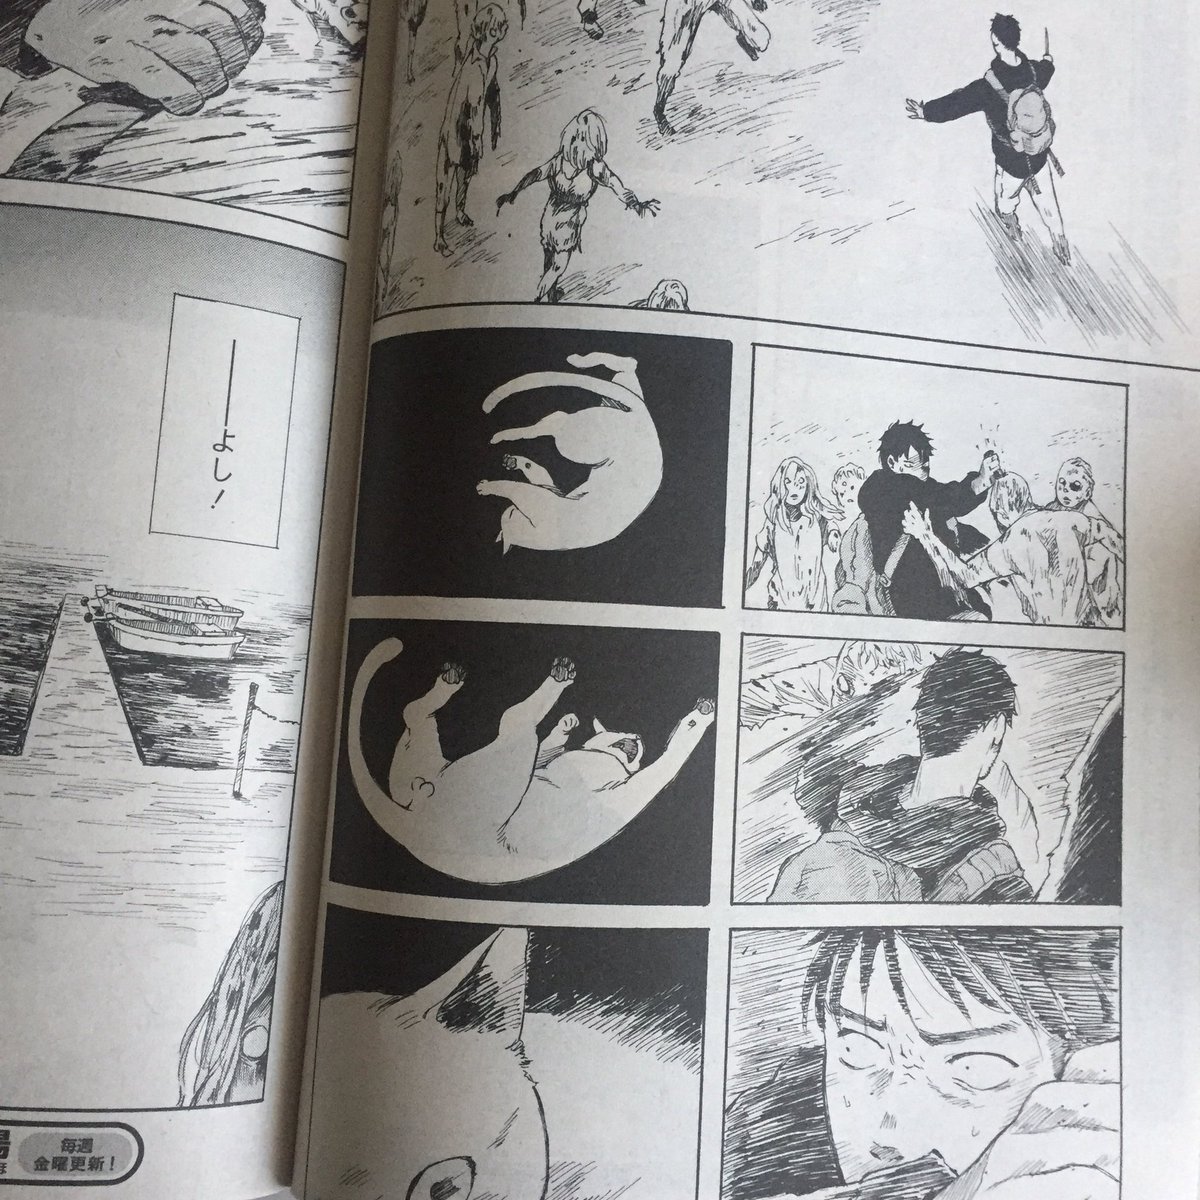 本日発売の漫画アクションにて「ウォーキング・キャット」11話が掲載されています。ジンとユキは「島」に渡れるのか?
よろしくお願いいたします! 